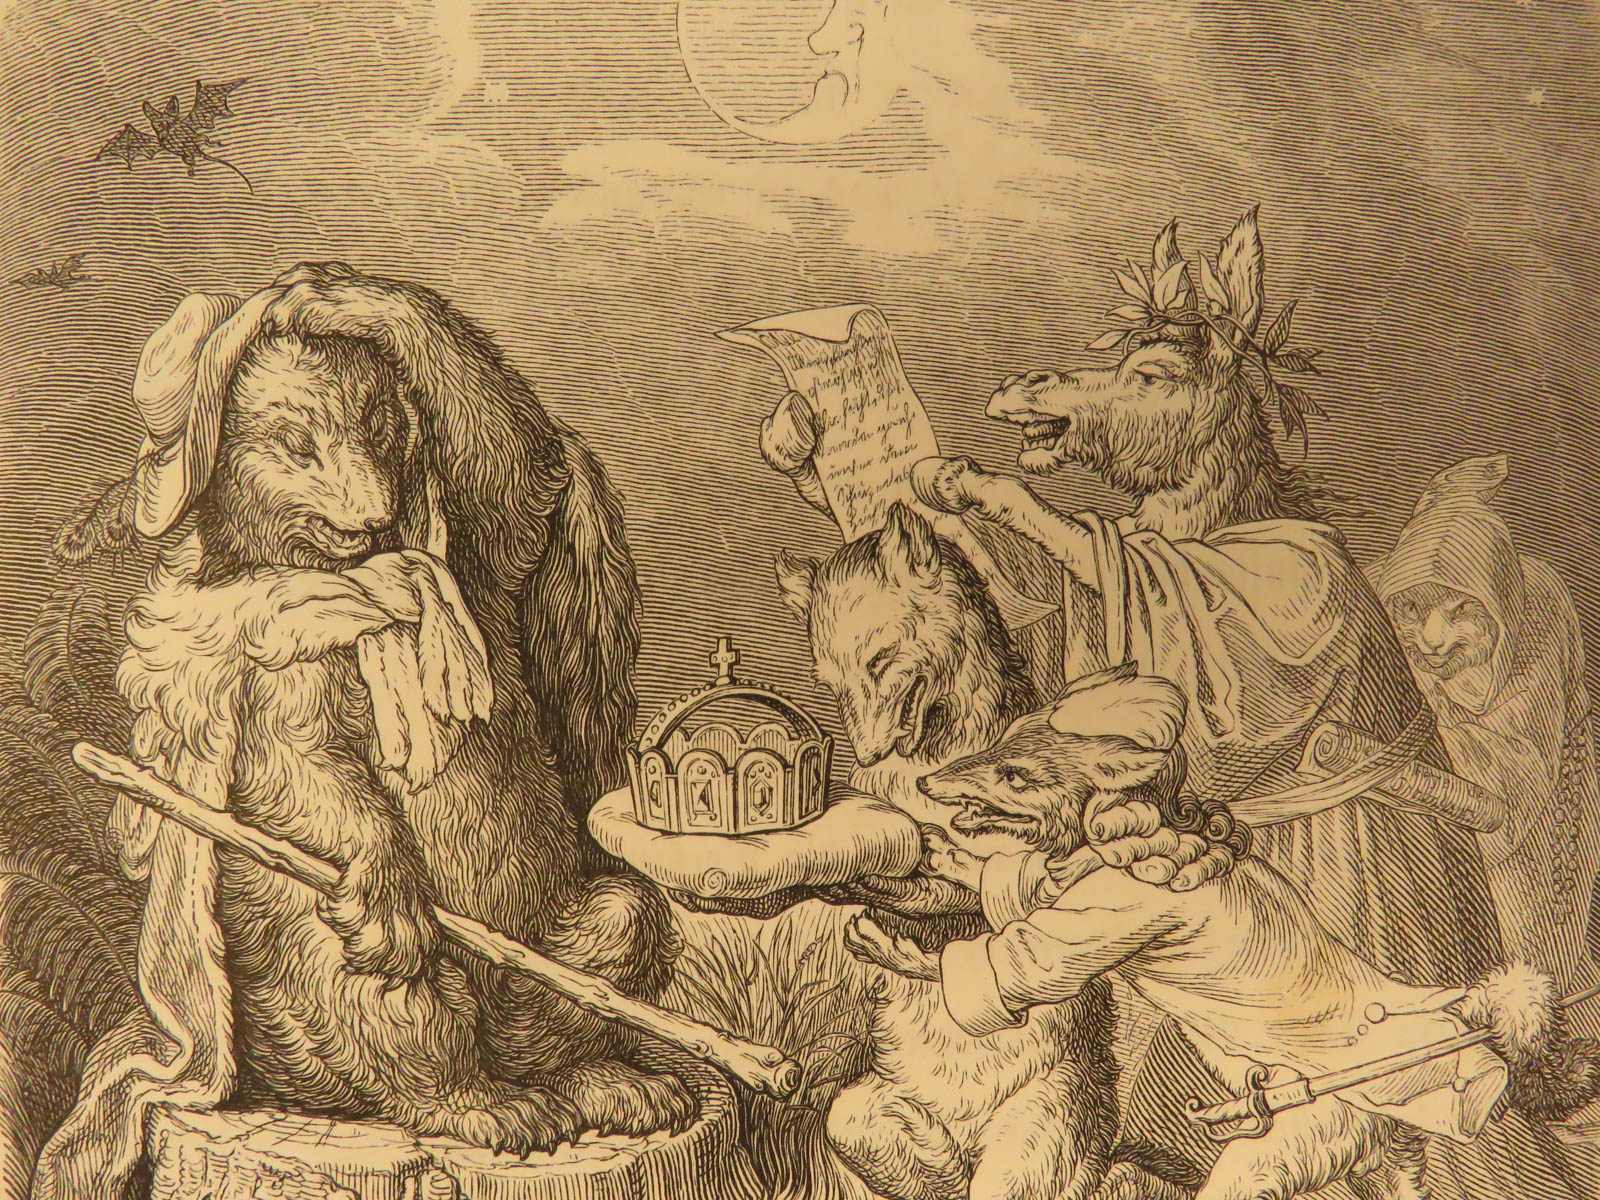 1857 Reynard the Fox by Goethe Reineke Fuchs Fable German Fairy Tale ...